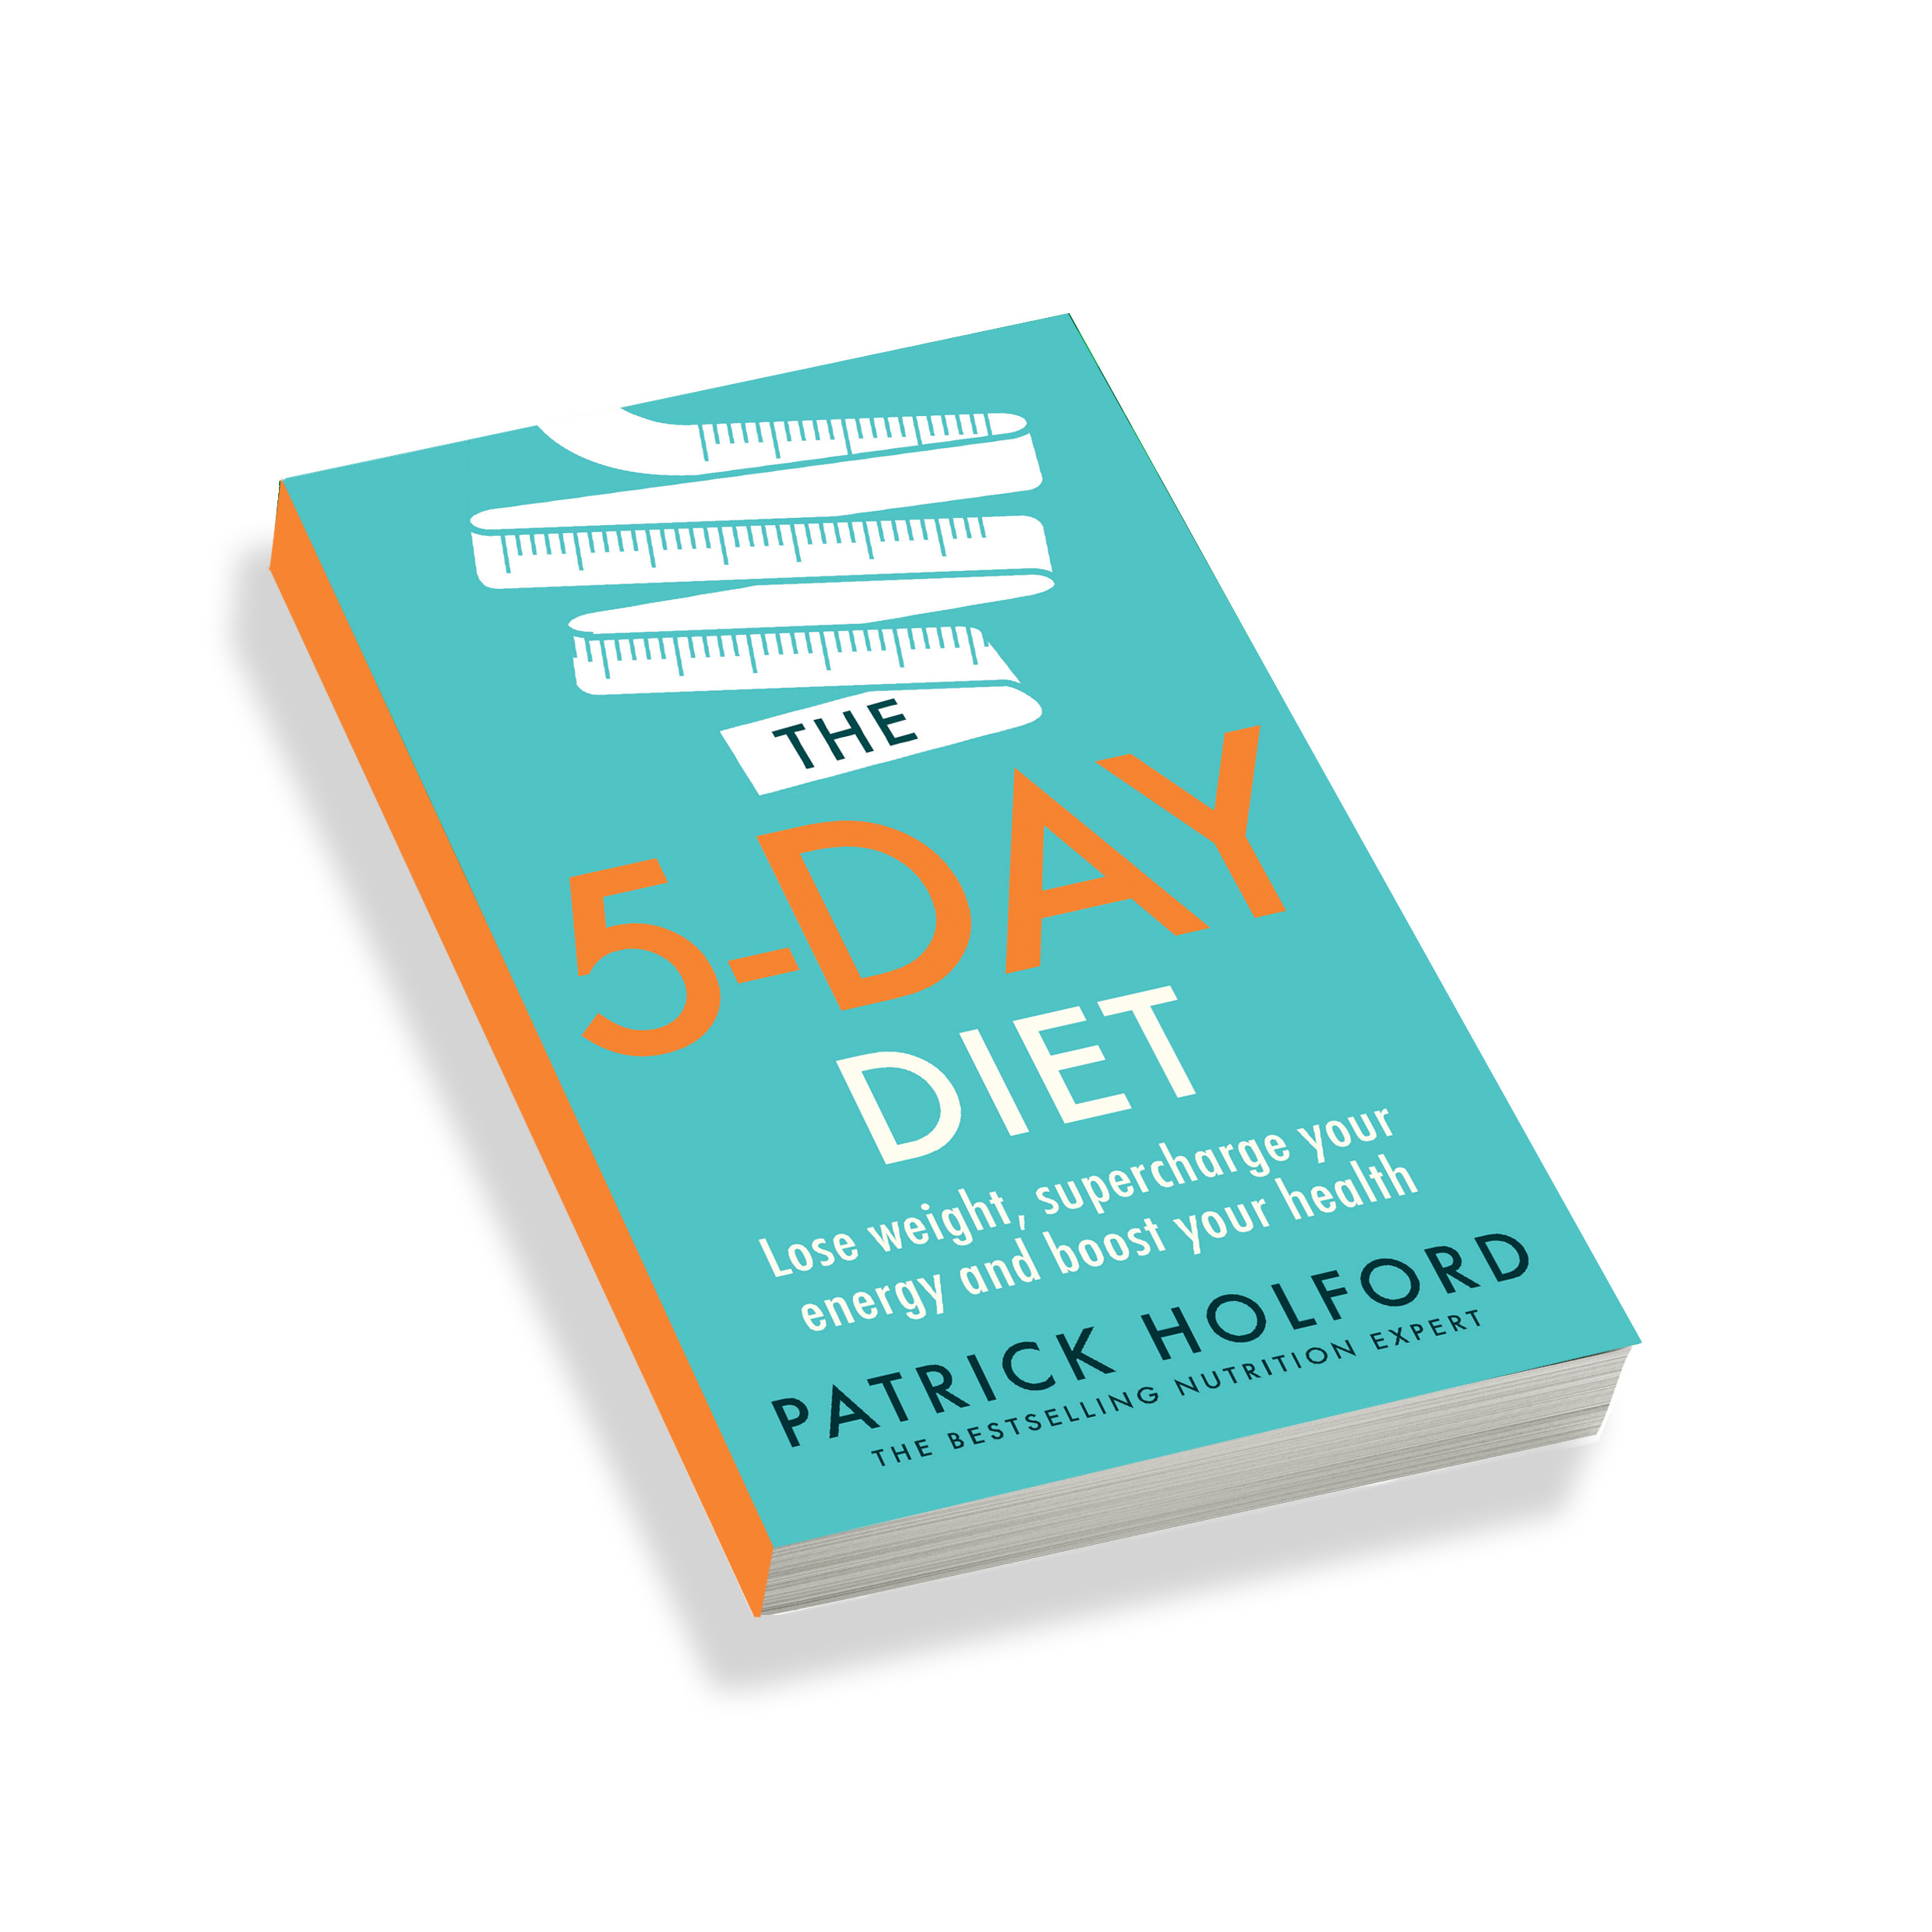 5 day diet book